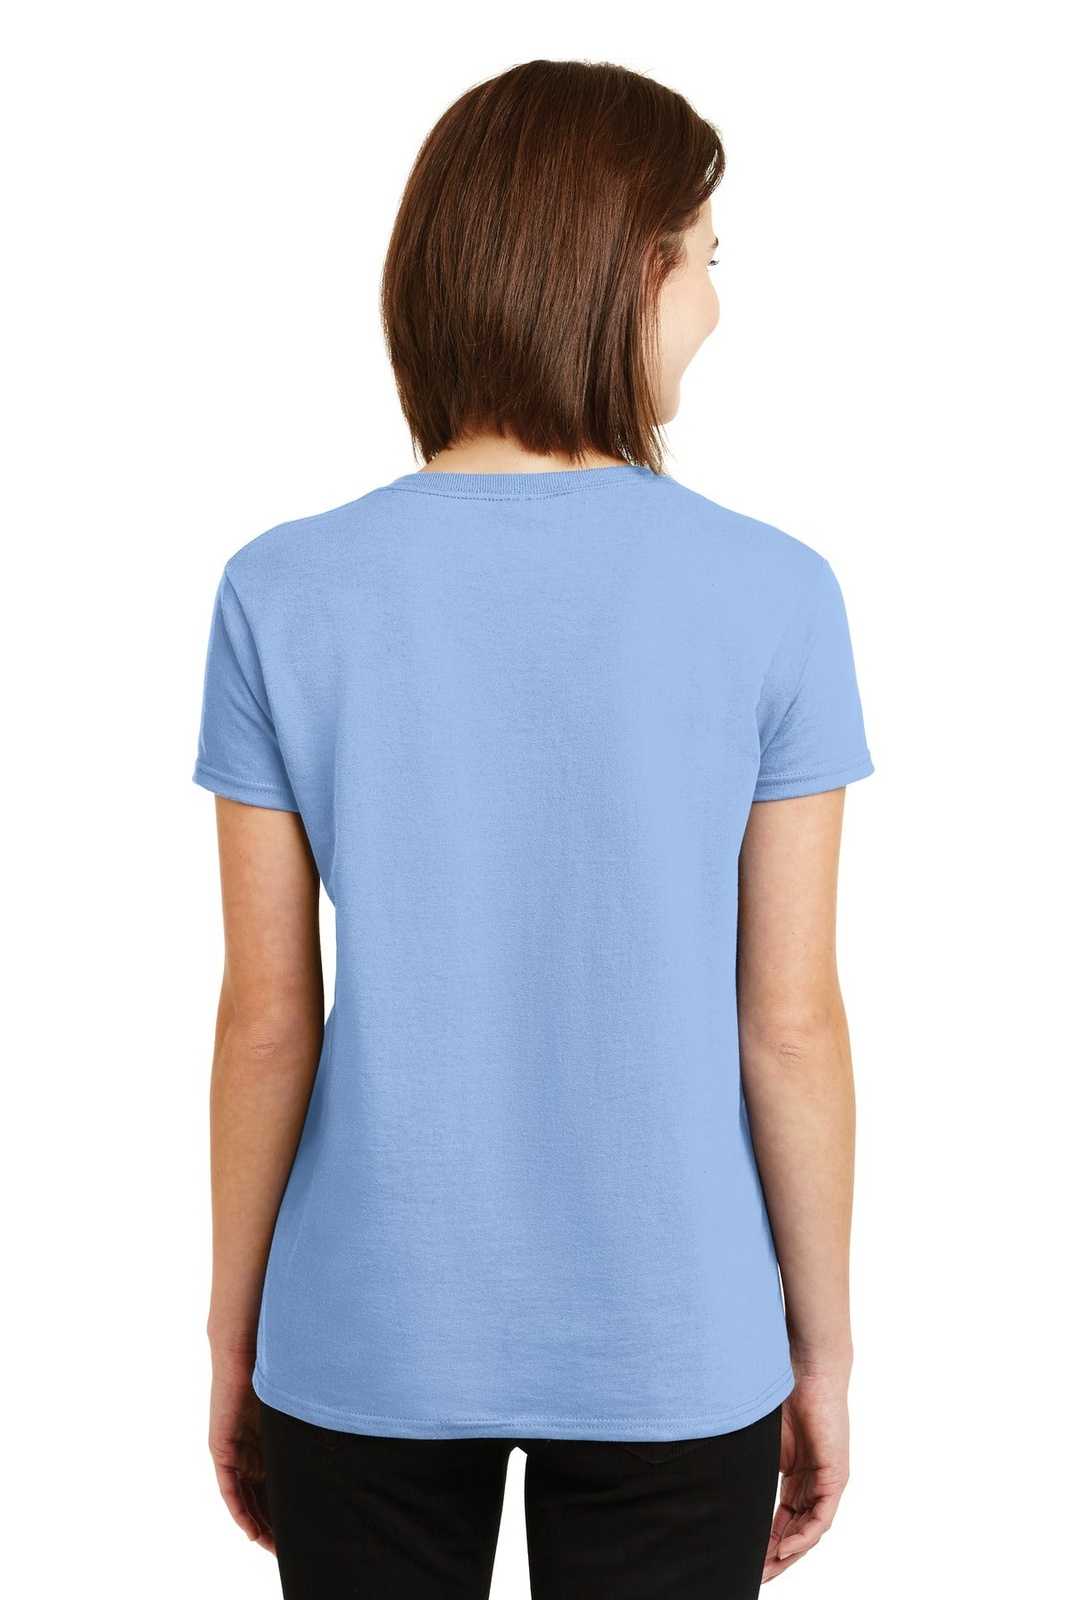 Gildan 2000L Ladies Ultra Cotton 100% Cotton T-Shirt - Light Blue - HIT a Double